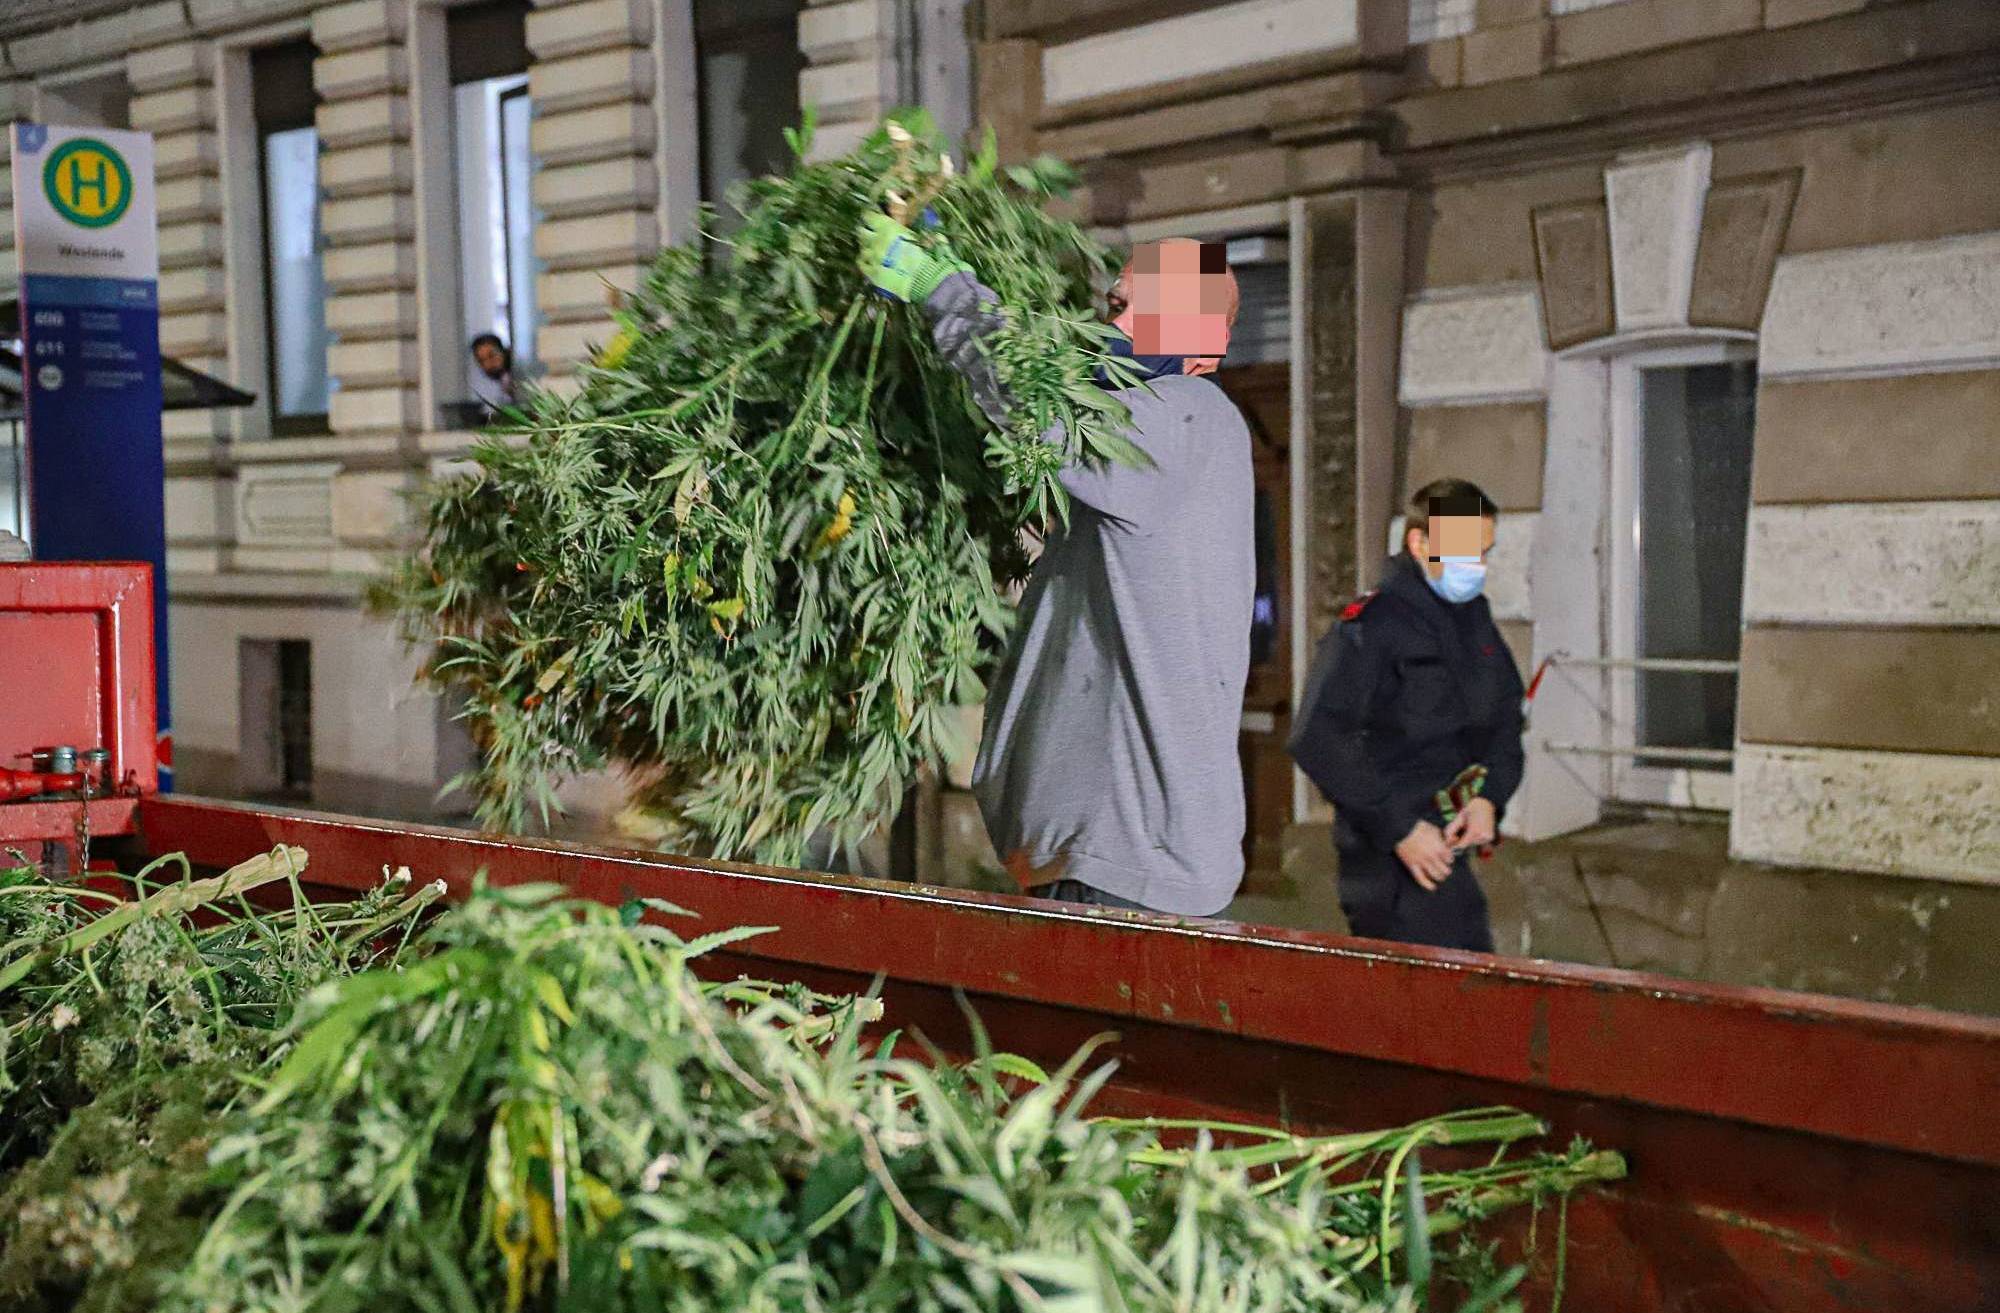 Polizei transportiert Marihuana-Pflanzen im Großcontainer ab